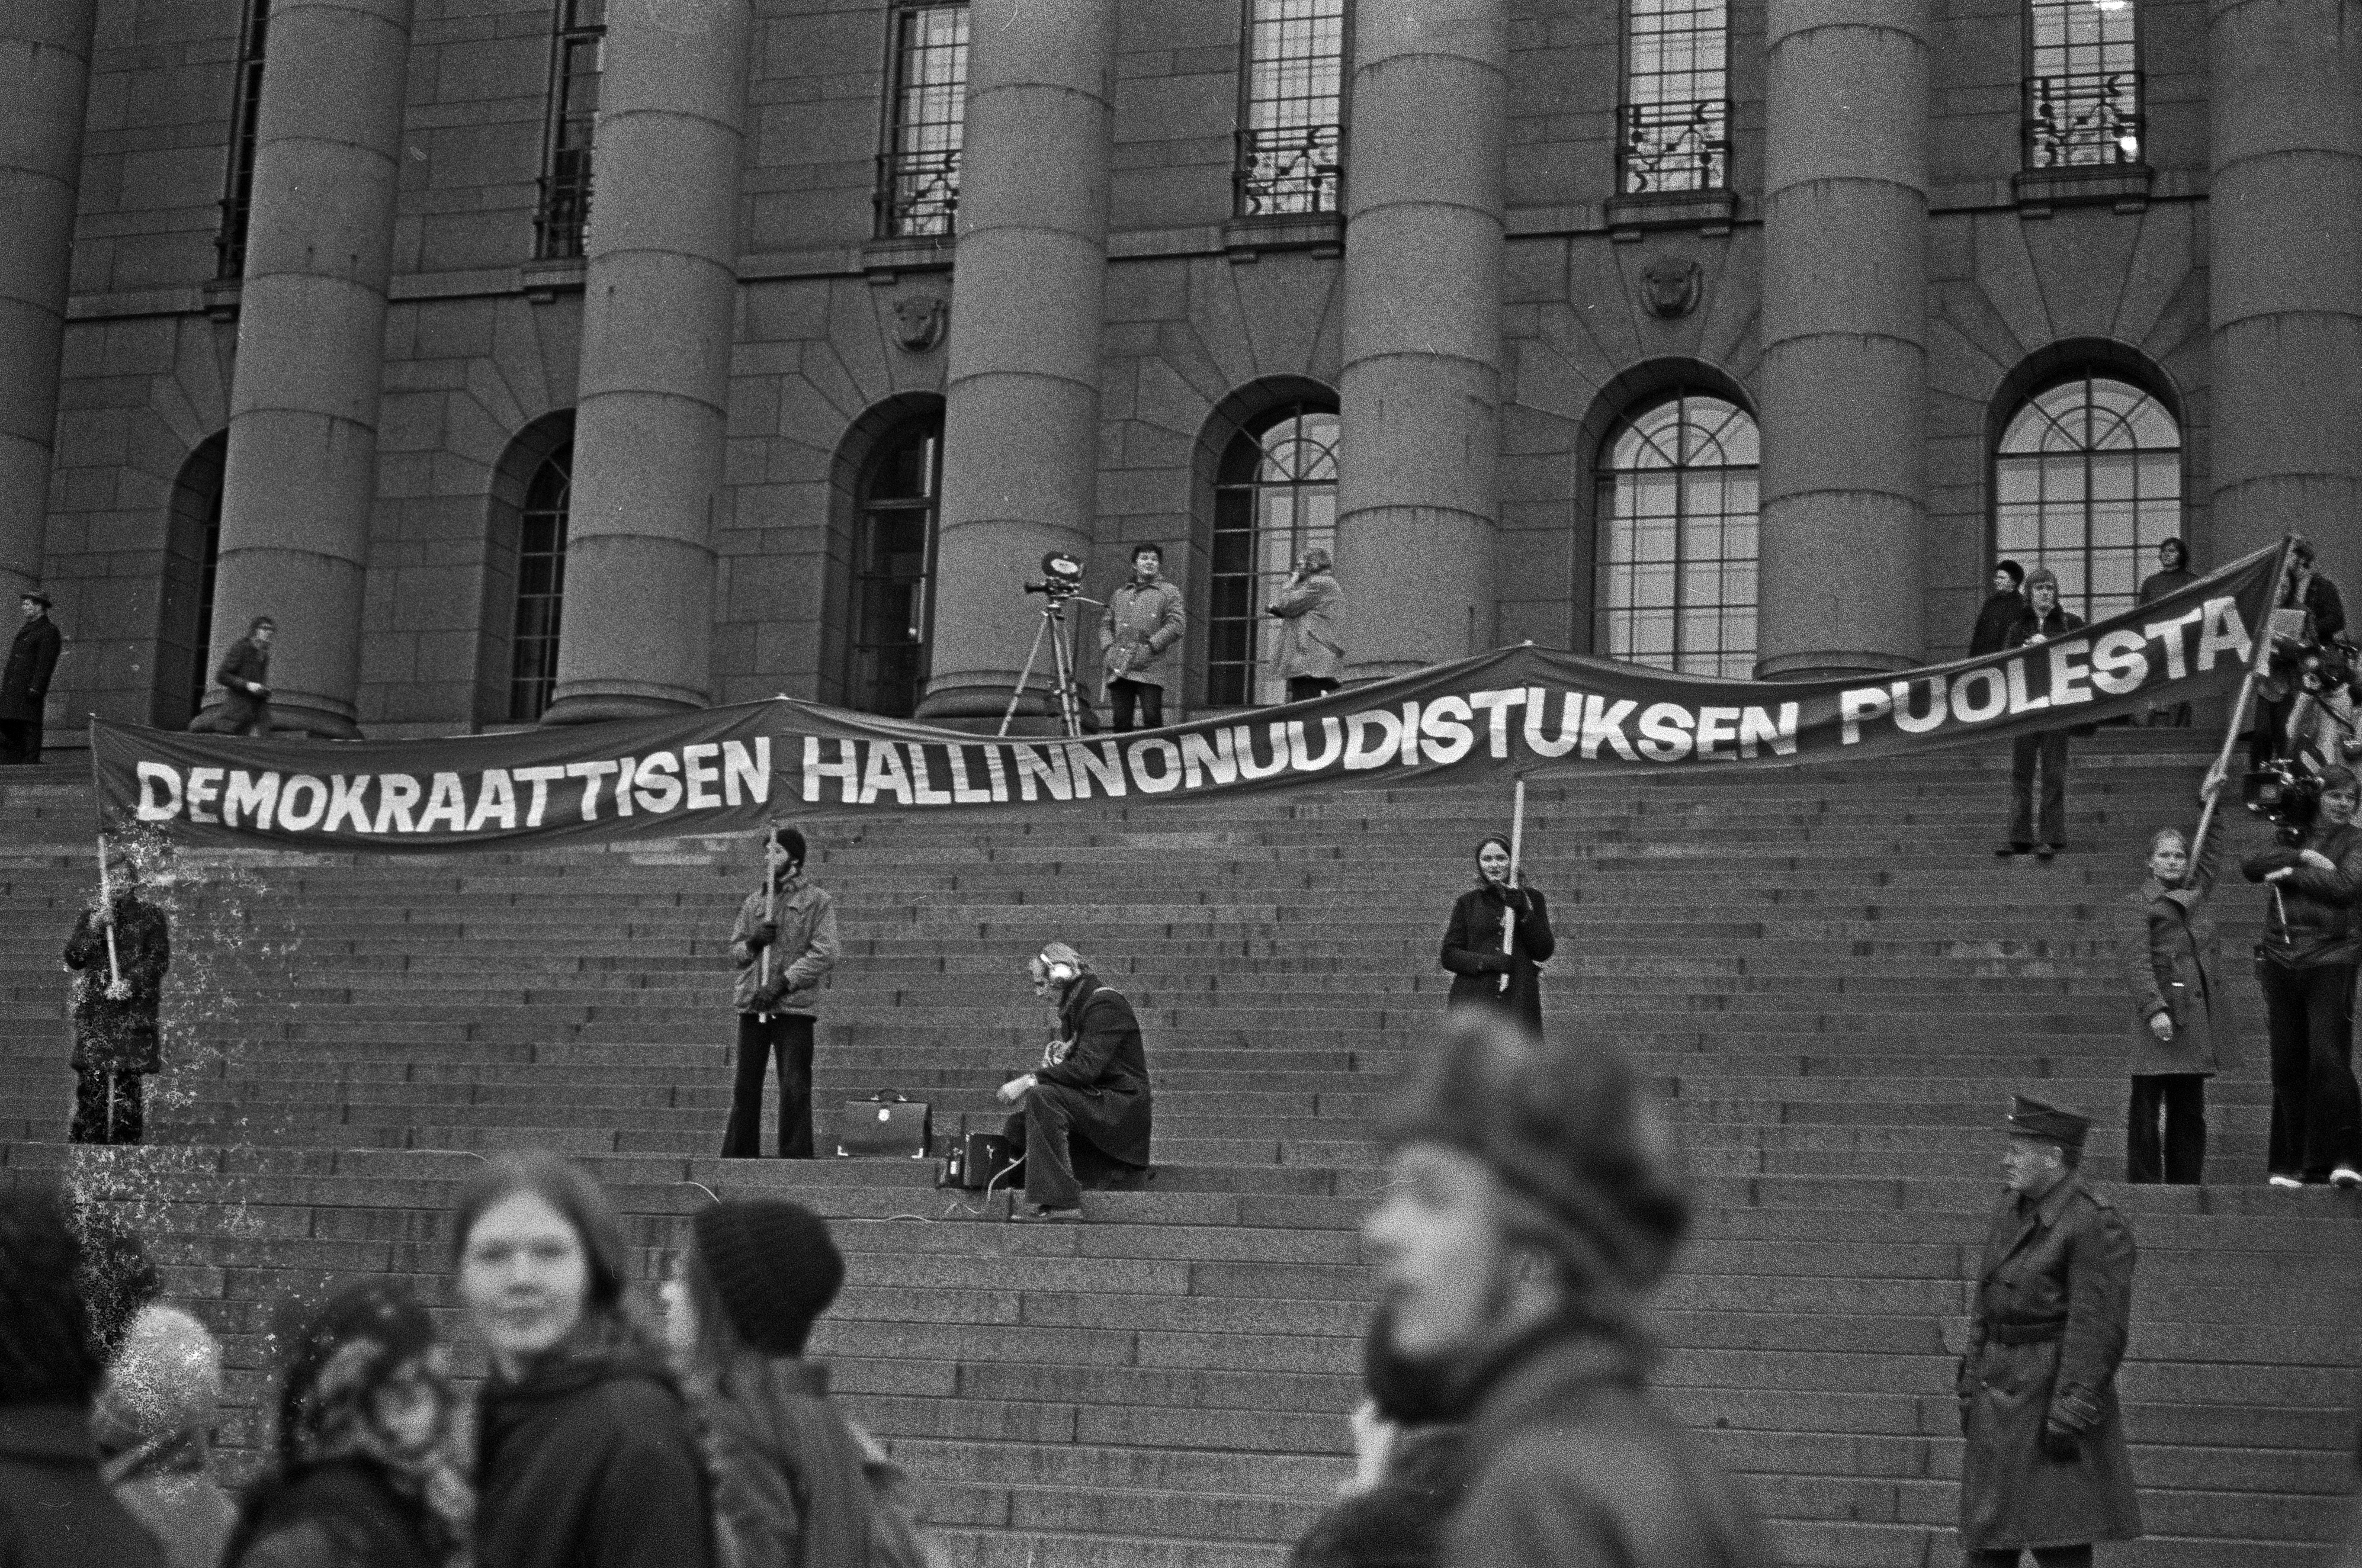 Mielenosoitus, jolla opiskelijaliike vaati yleistä ja yhtäläistä äänioikeutta (yyä) yliopistojen ja korkeakoulujen hallintoelinten valintaperusteeksi. Mielenosoittajat pitävät pystyssä banderollia Eduskuntatalon portailla.